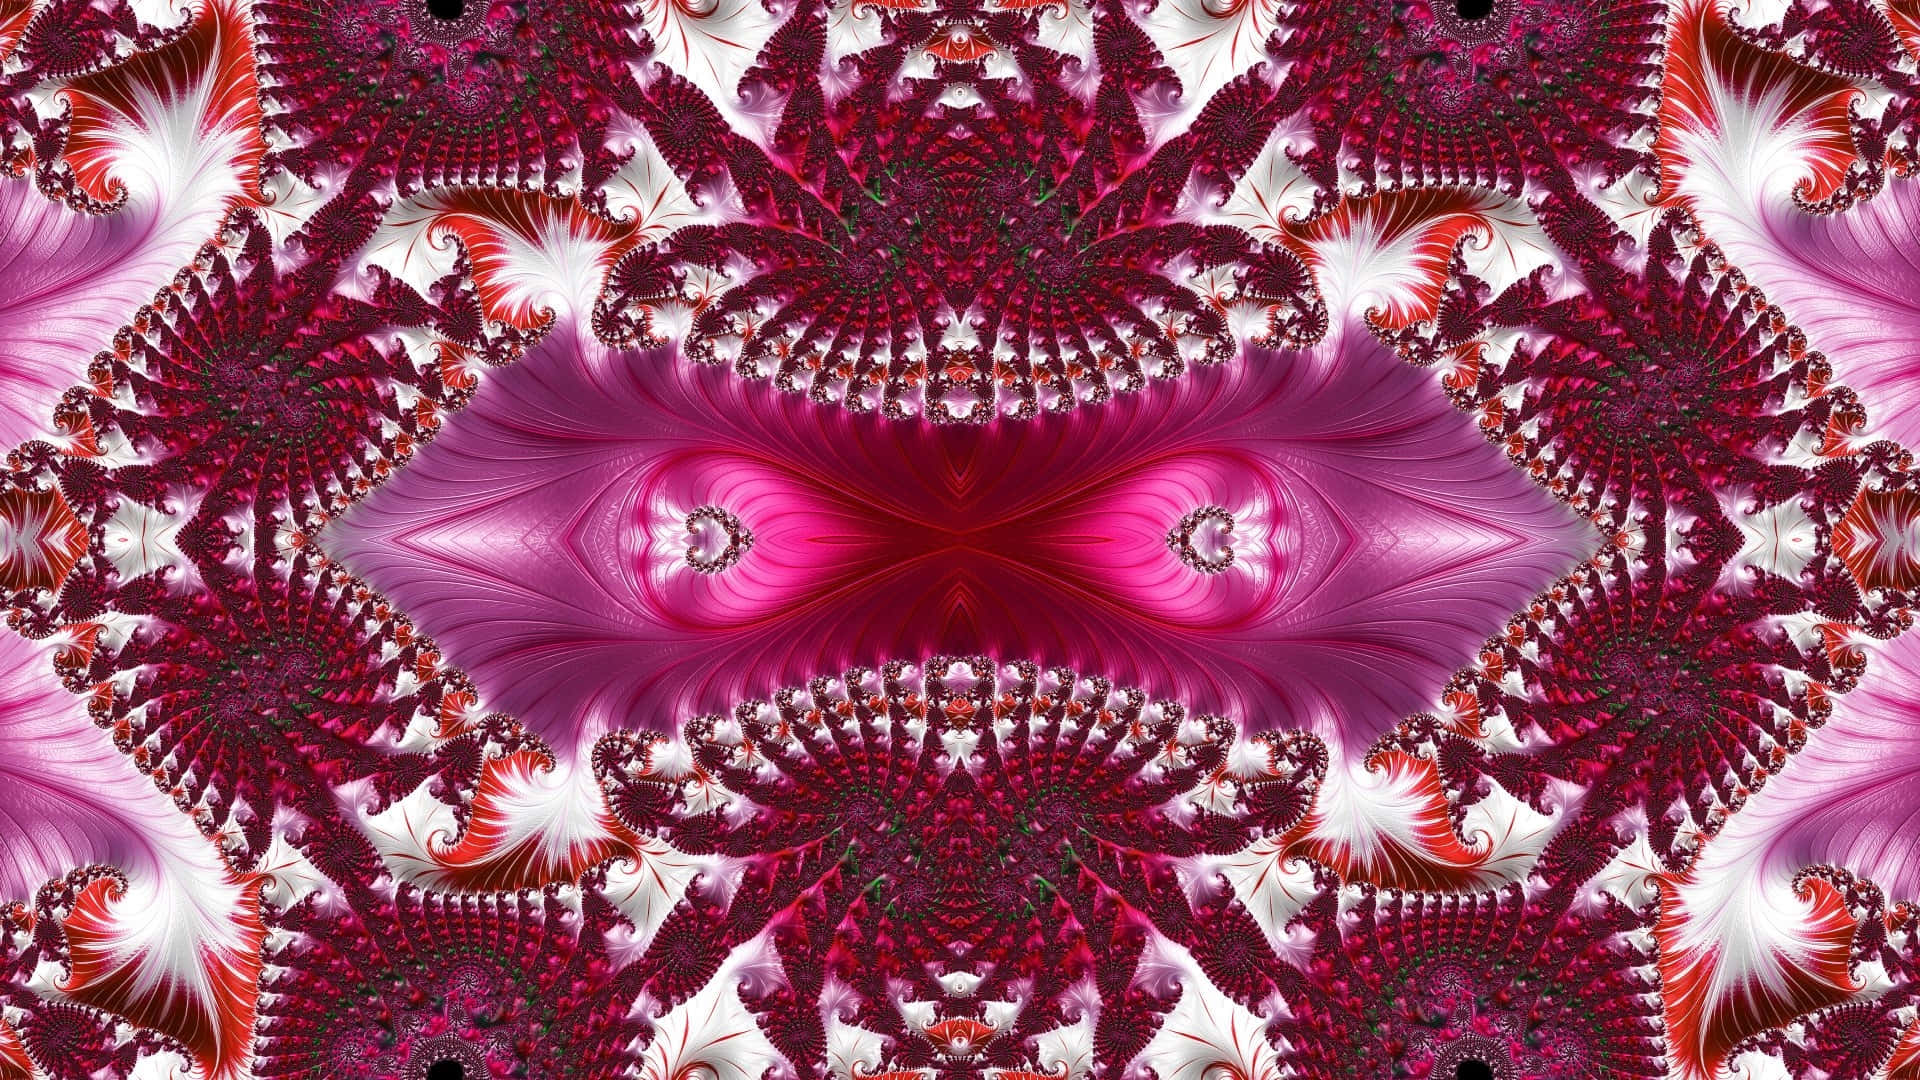 Psychedelic Purple Fractal Art.jpg Wallpaper